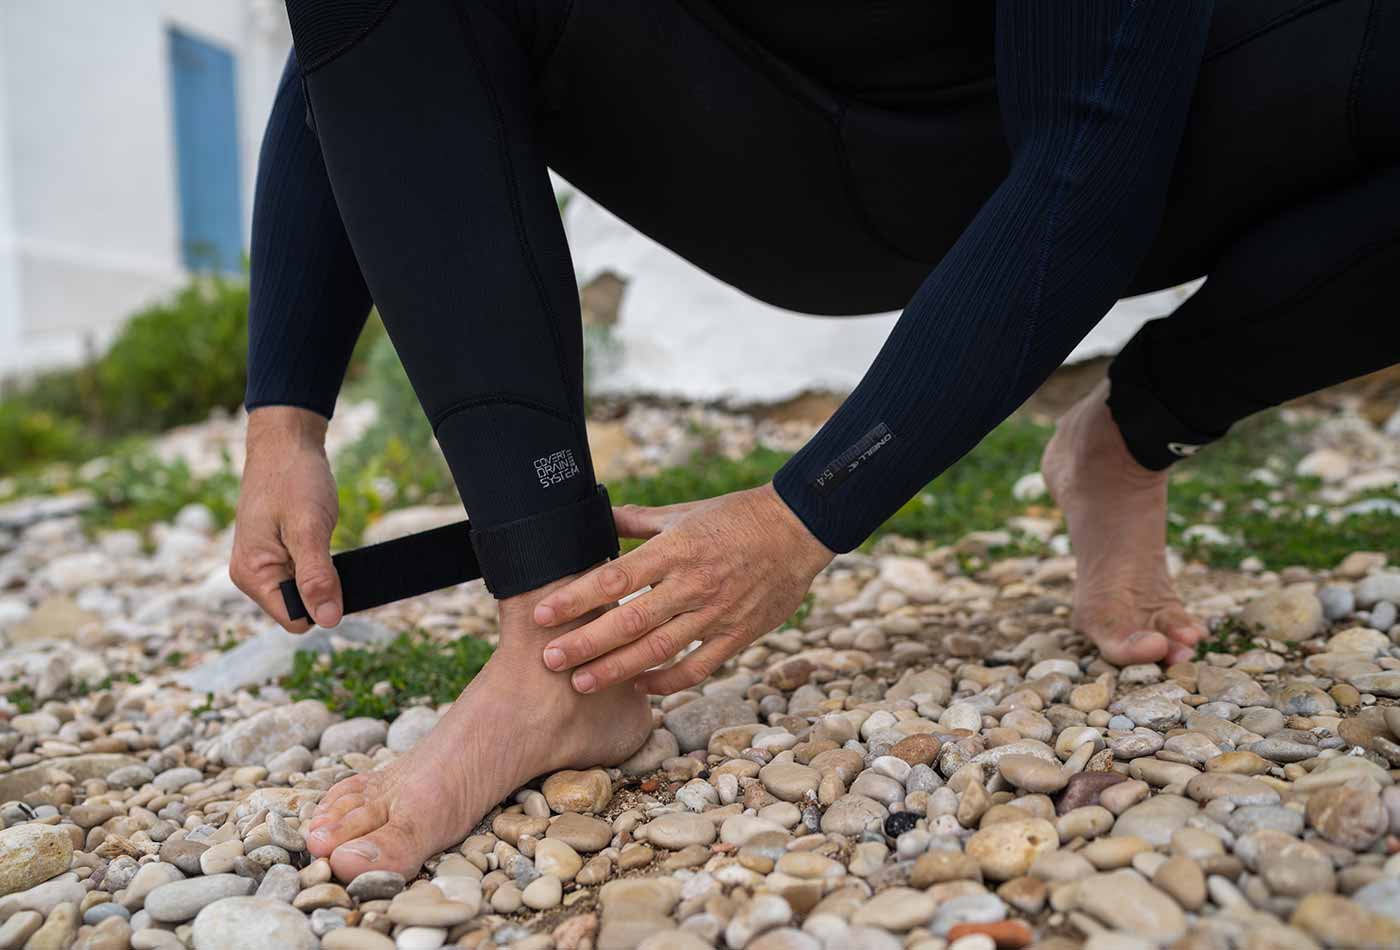 O'Neill Leg Chinches lentes ar Velcro lipekļiem, lai savilktu ciešāk kāju galus un pasargātu no ūdens šļakatu pakļūšanas zem hidrotērpa, nodarbojoties ar kaitsērfingu vai vindsērfingu.